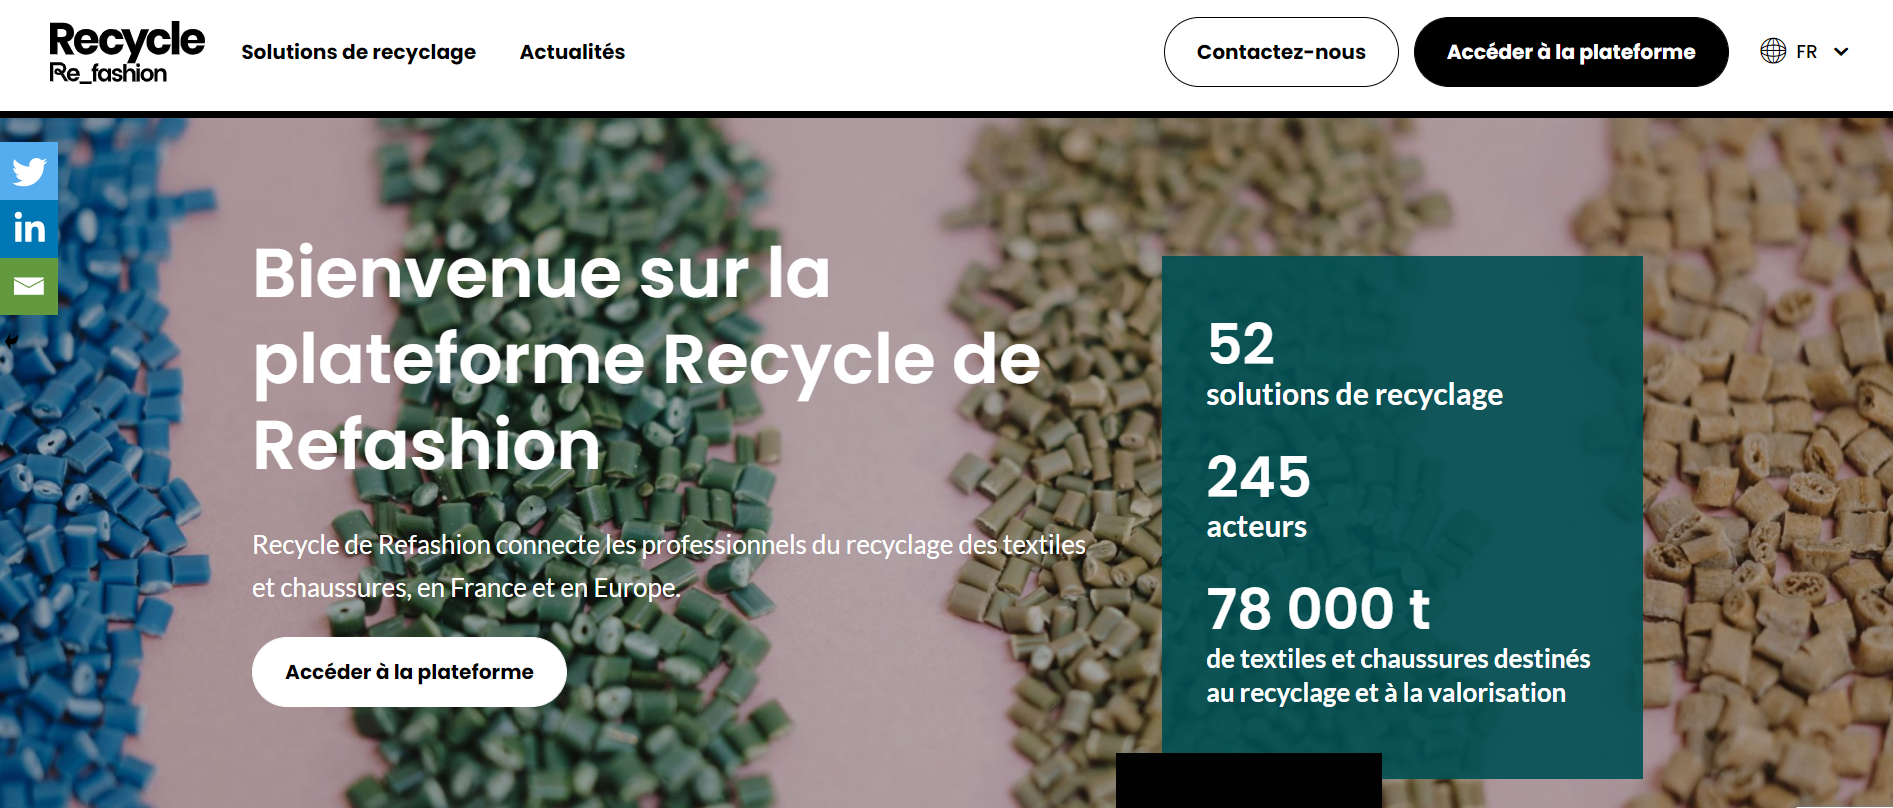 法国纺织品行业环保机构 Refashion 推出材料回收信息交流平台